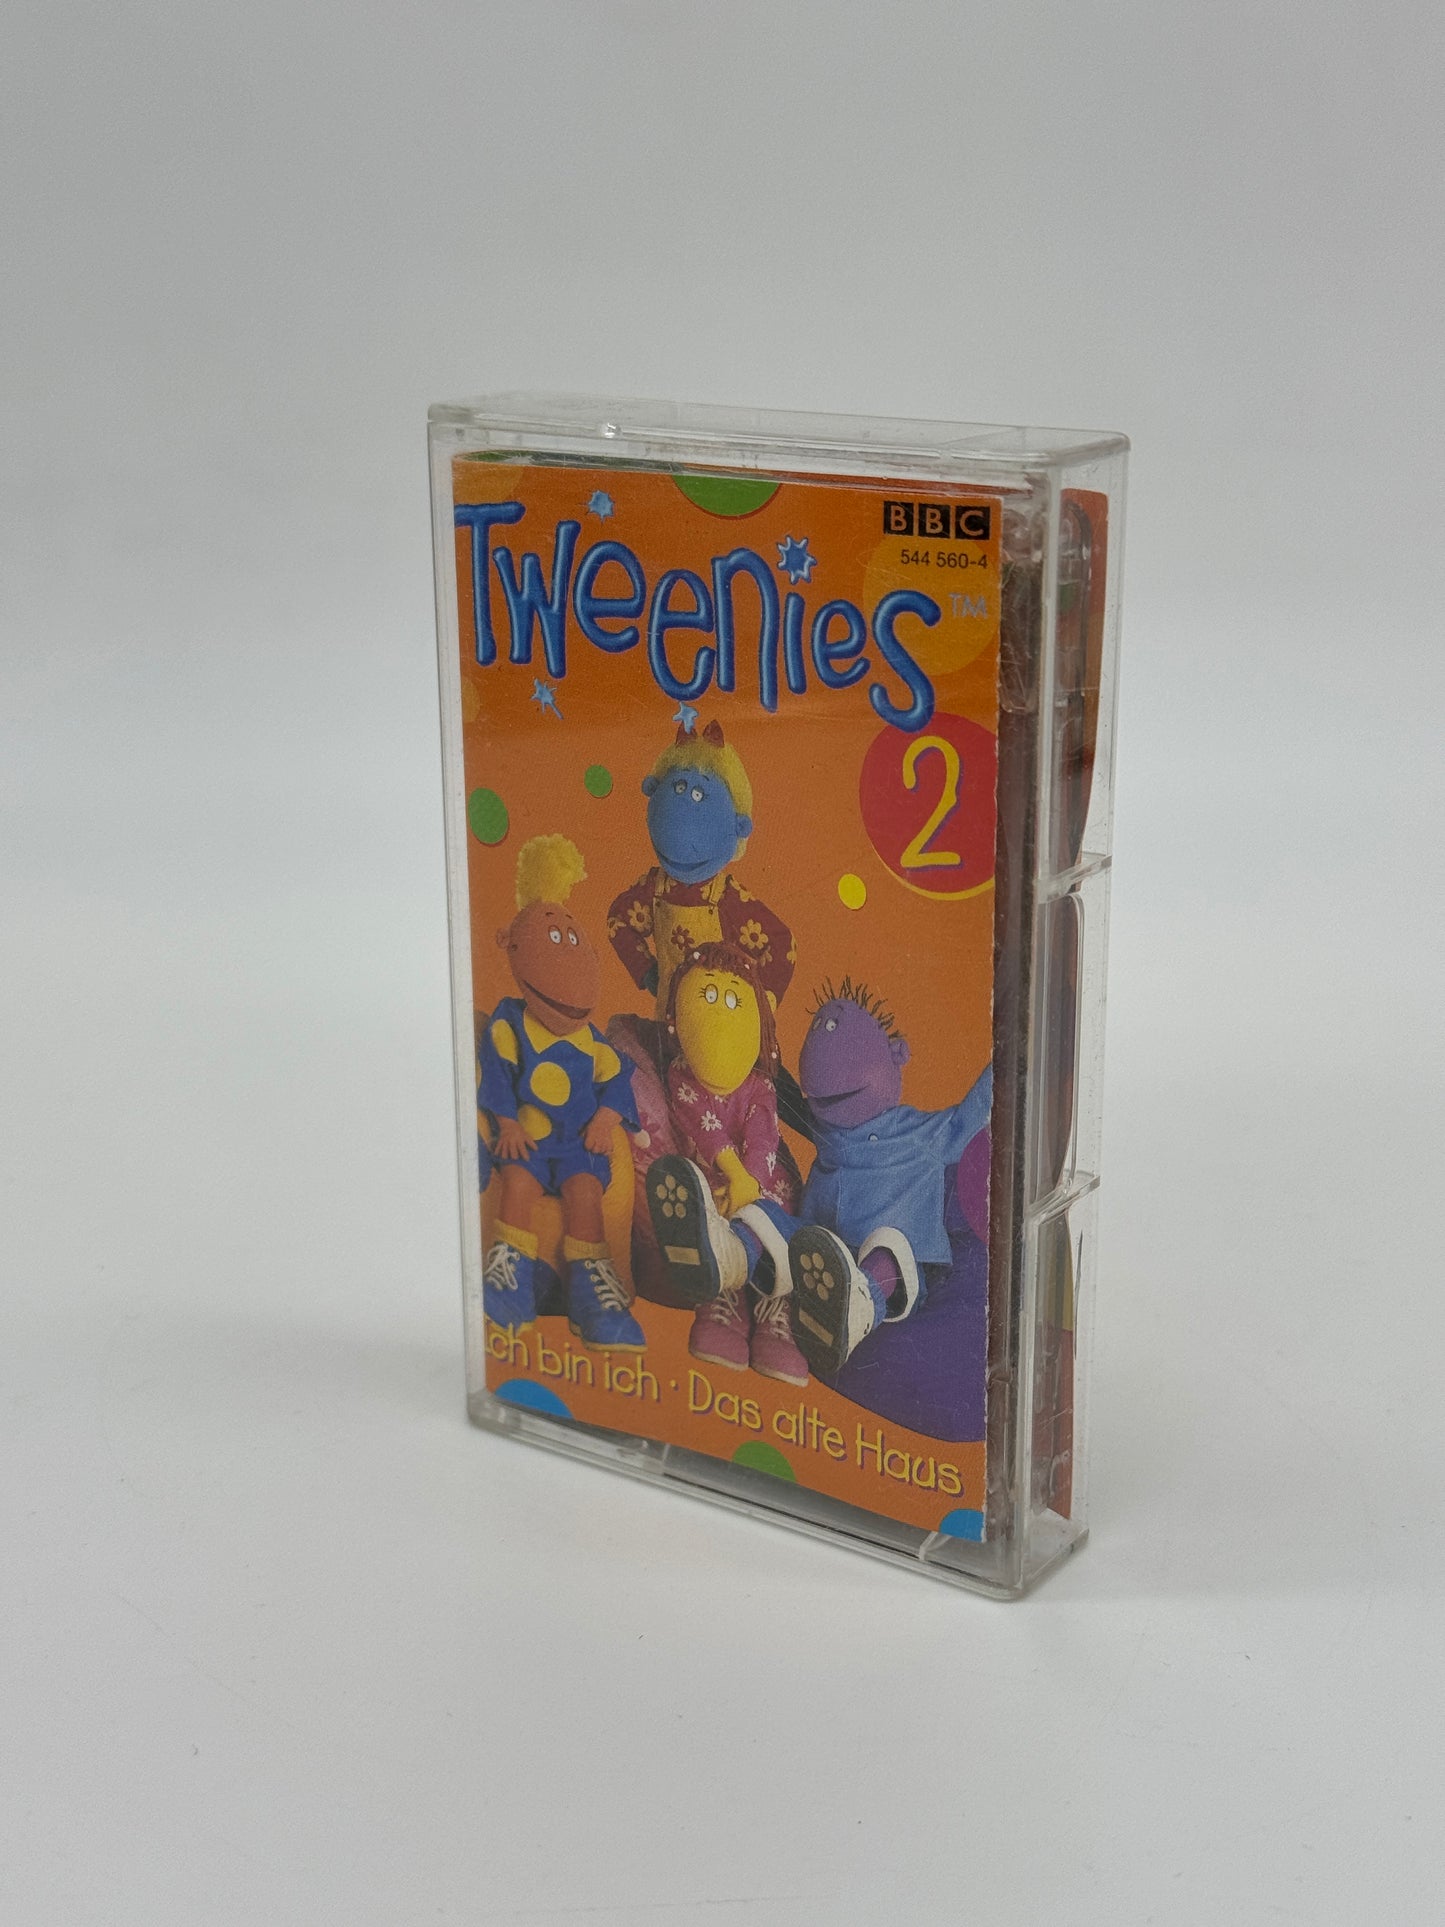 Tweenies "Ich bin ich - Das alte Haus" Folge 2 Hörspielkassette Karussell (2001)